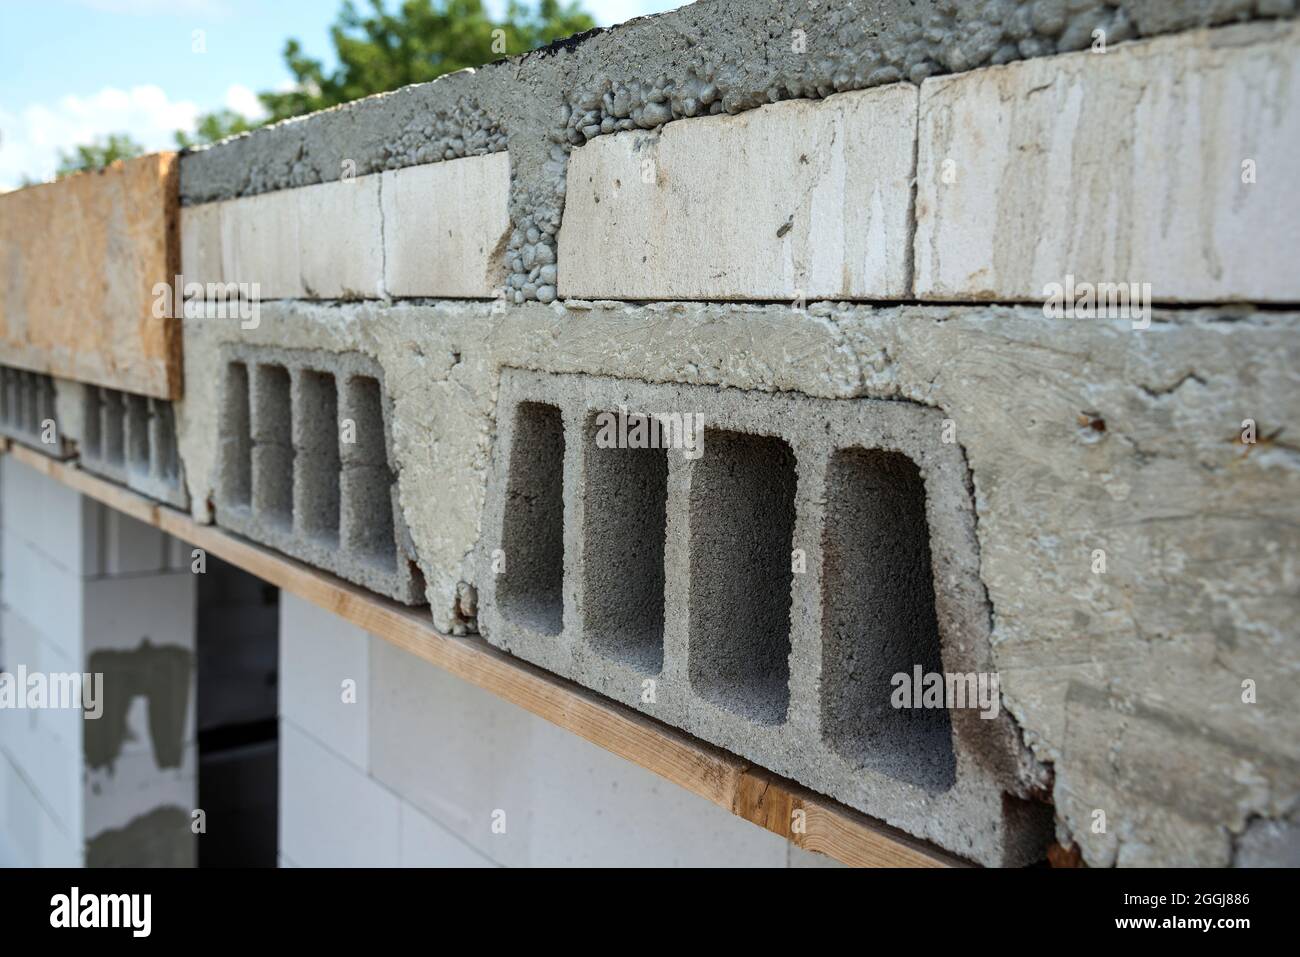 Betondecke auf einem konstruierten Haus Stockfotografie - Alamy